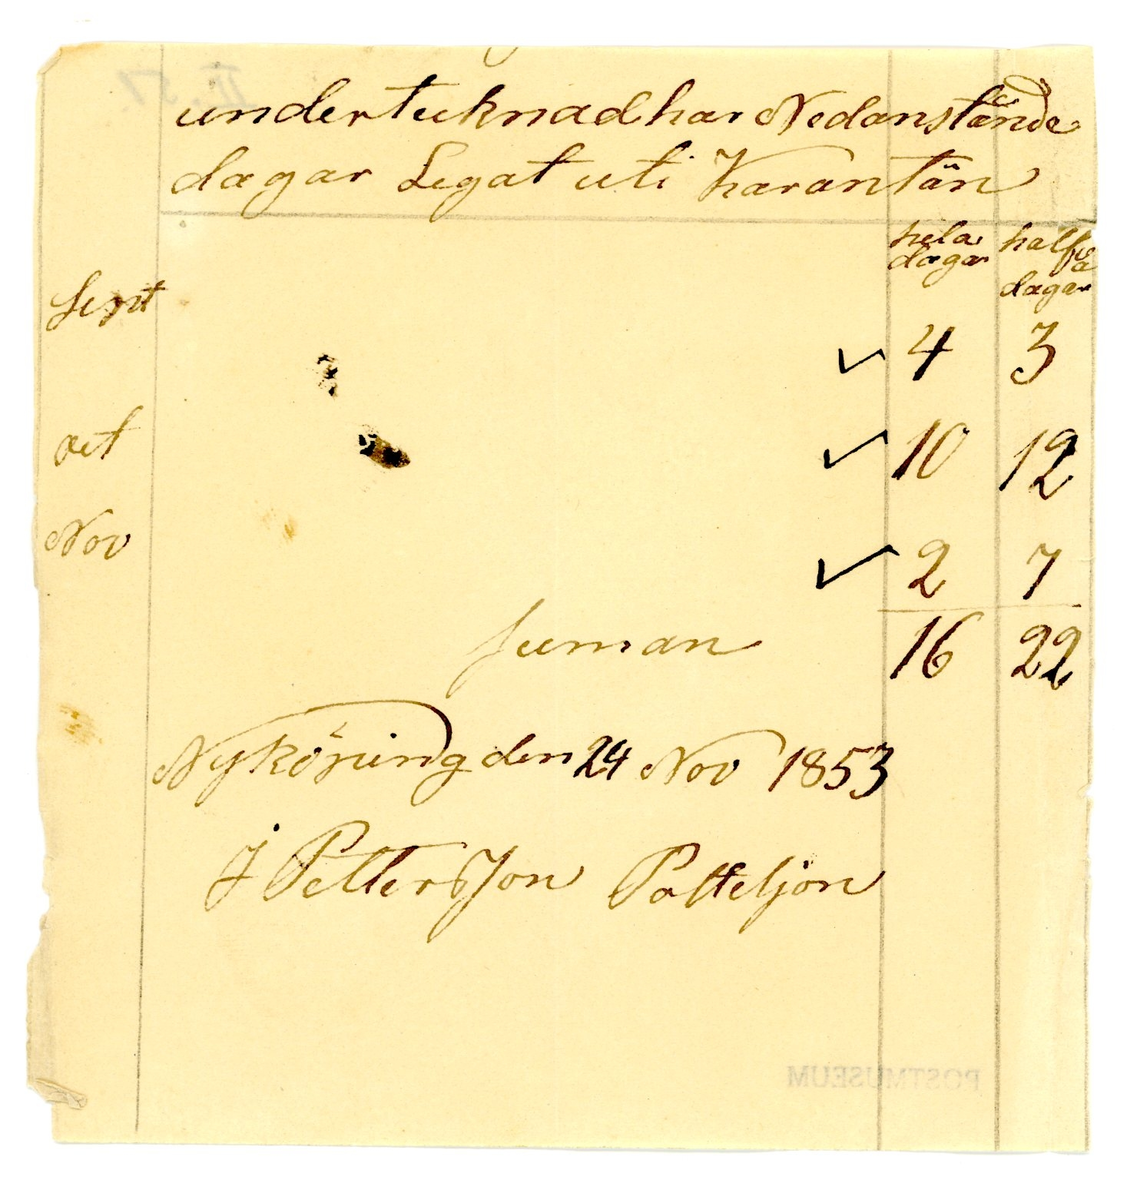 Uppgift för de dagar då undertecknad har legat i karantän under perioden september - november 1853.

Summa 16 hela och 22 halva dagar.